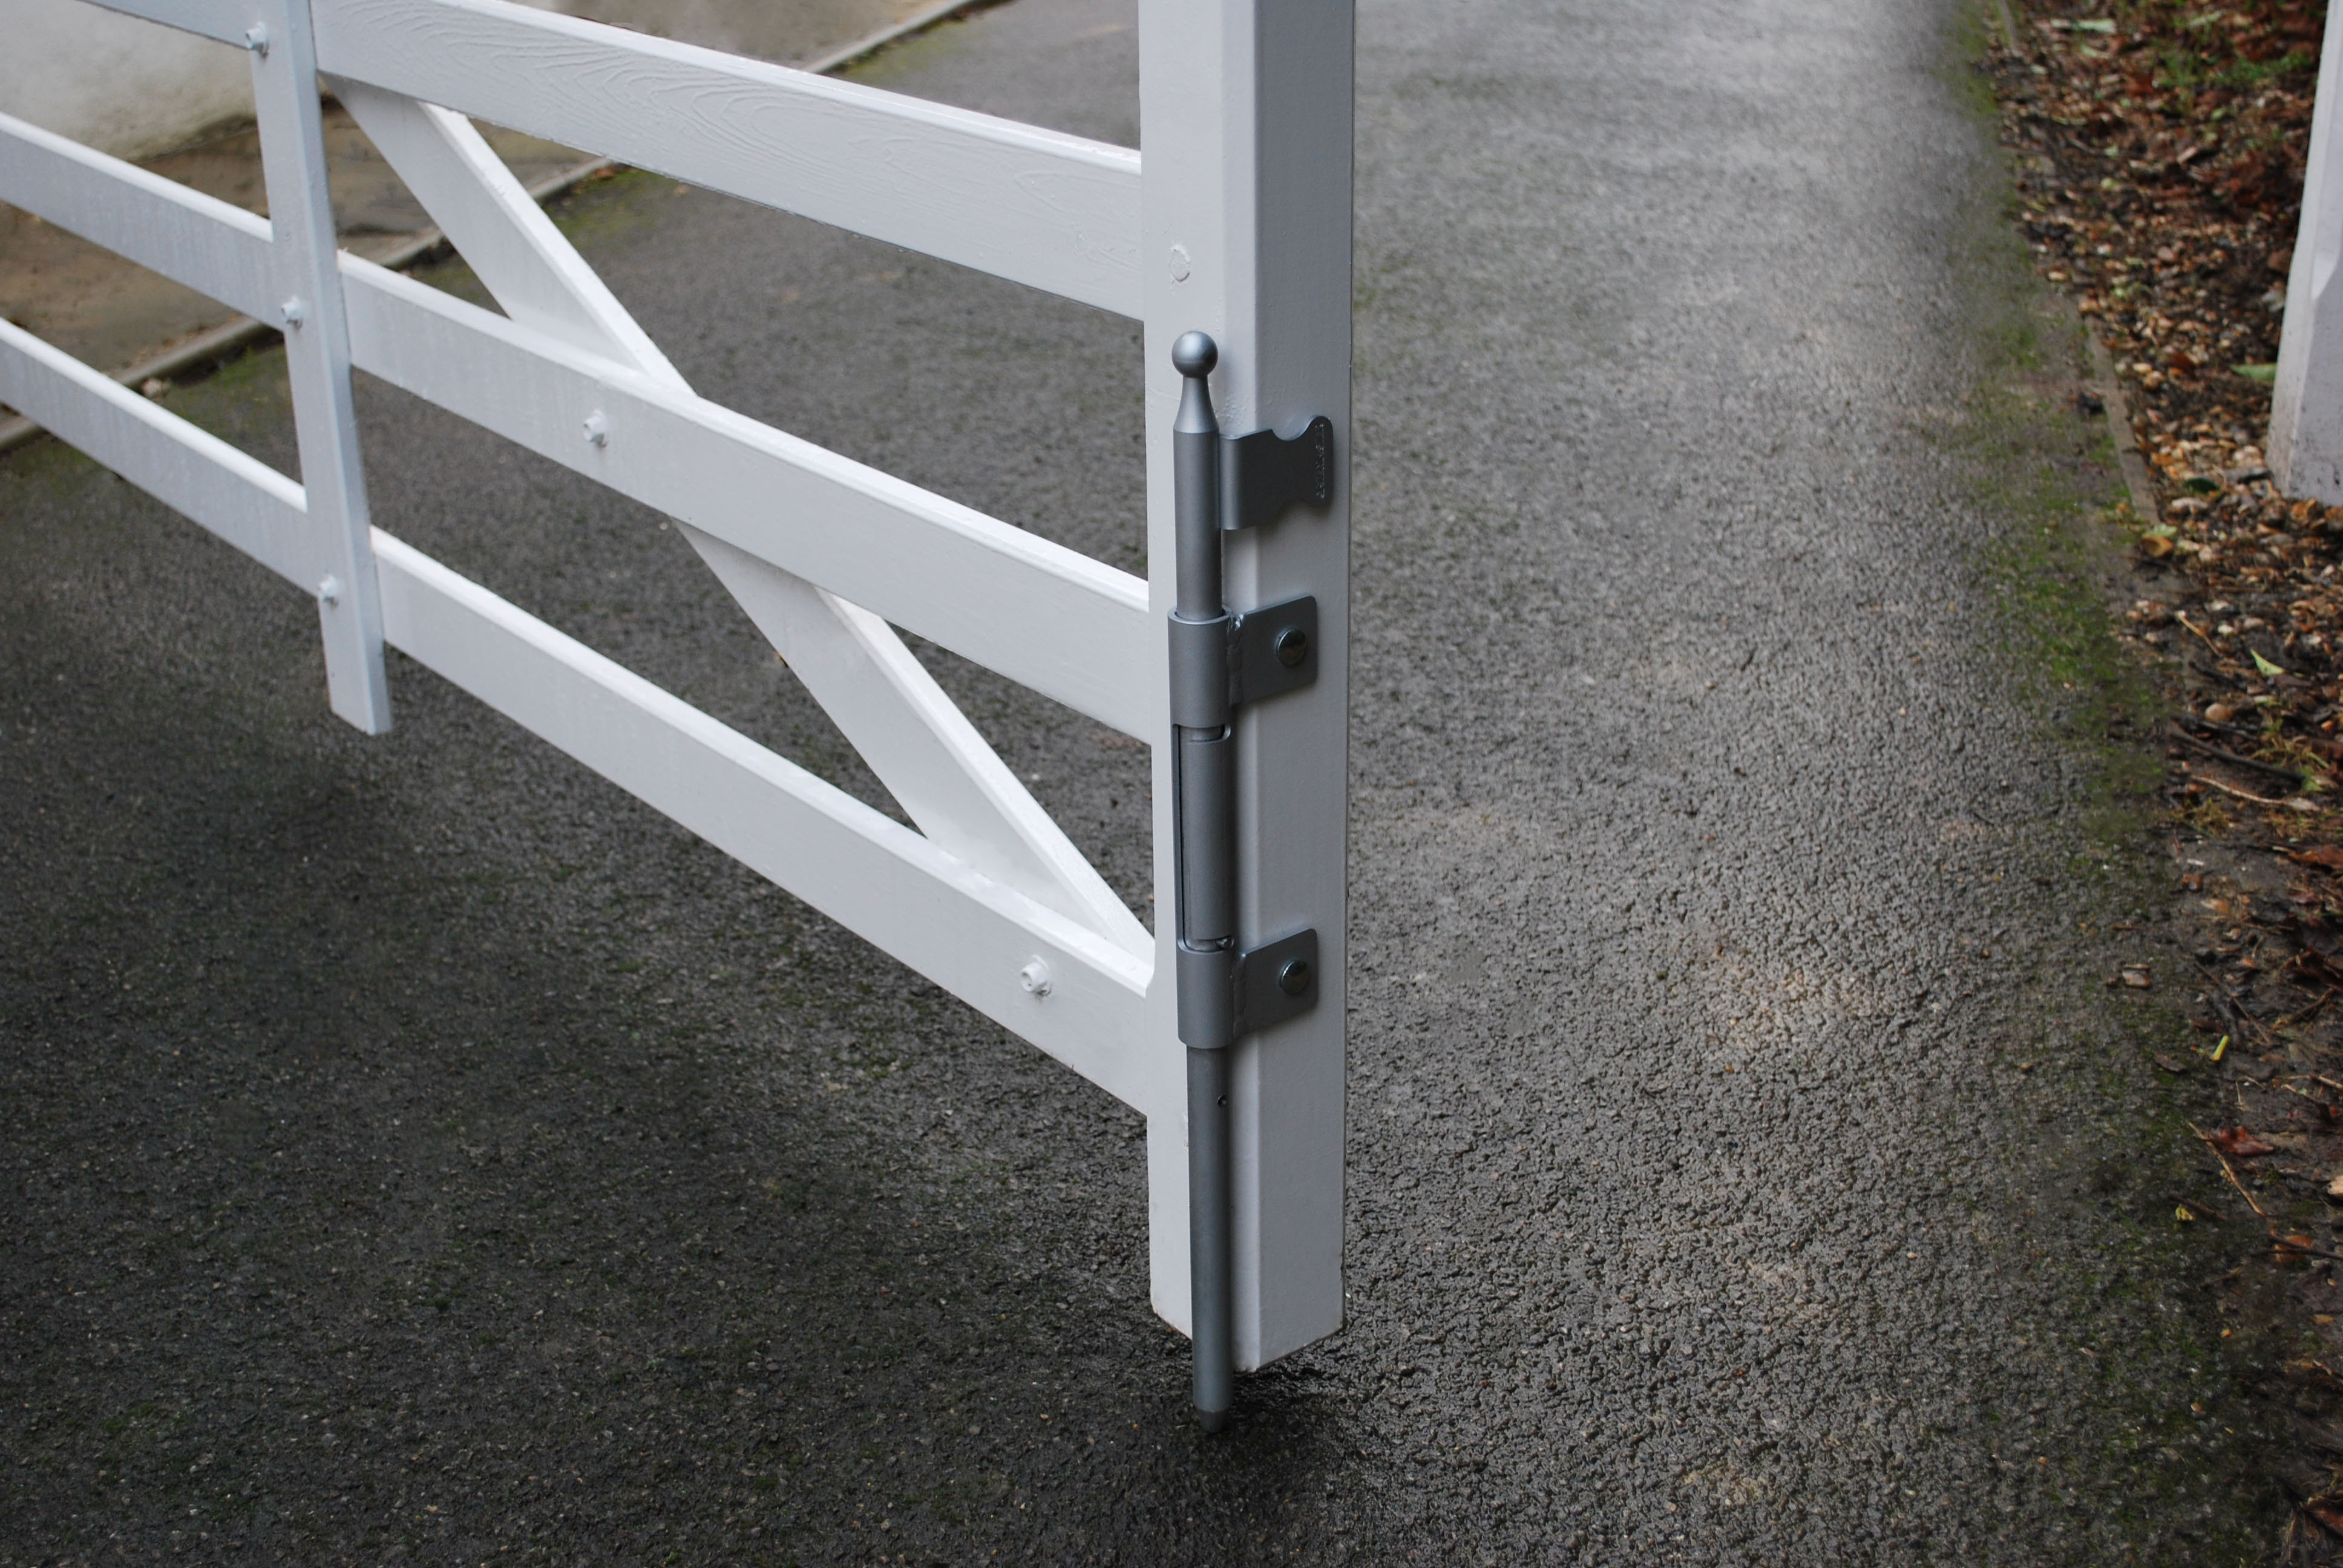 Verrouillage automatique à pêne basculant en applique sur un portail en bois blanc